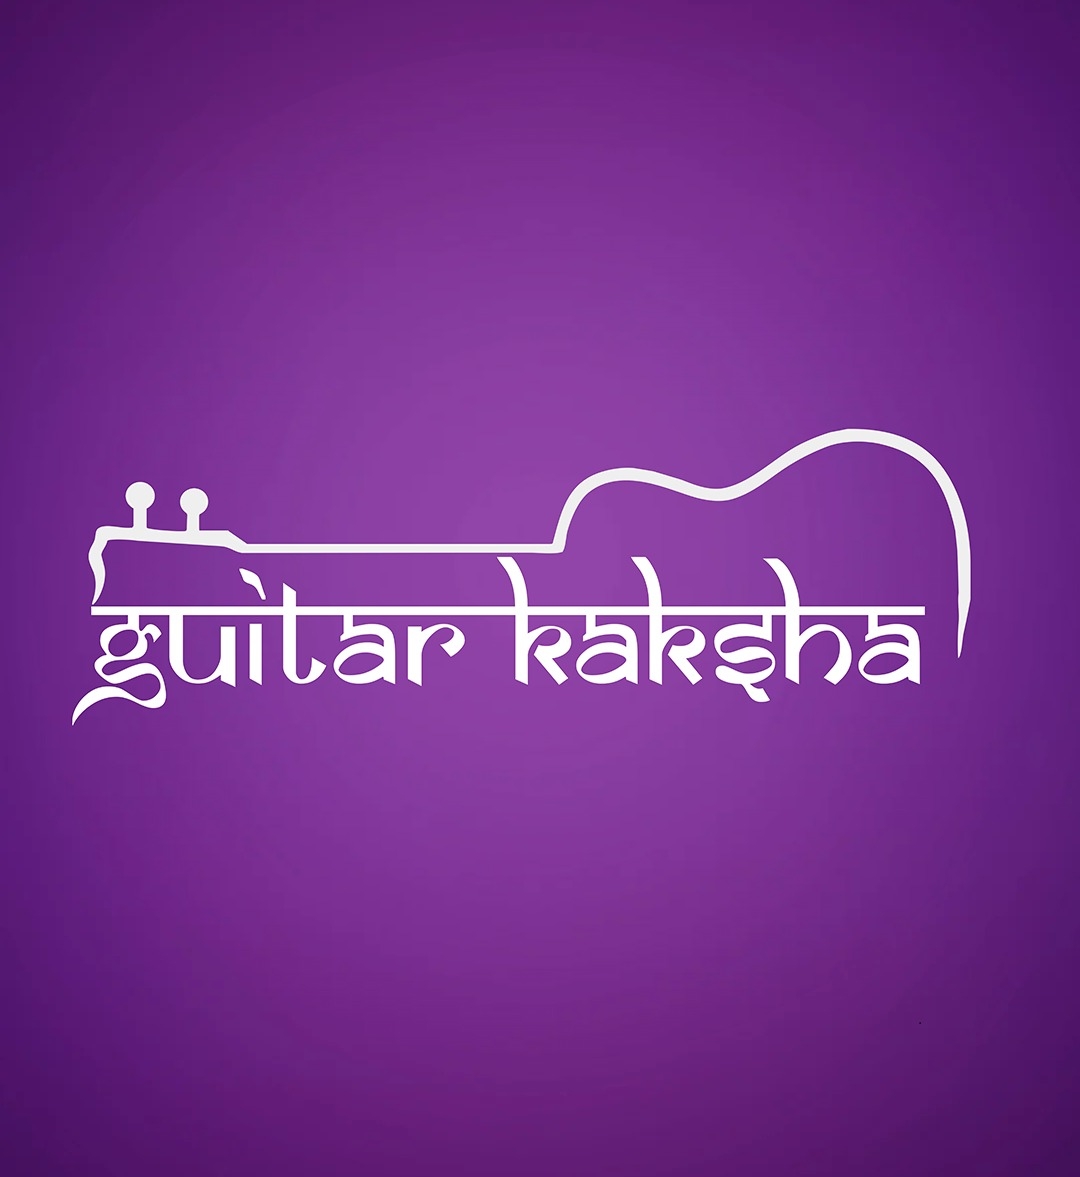 Guitar Kaksha